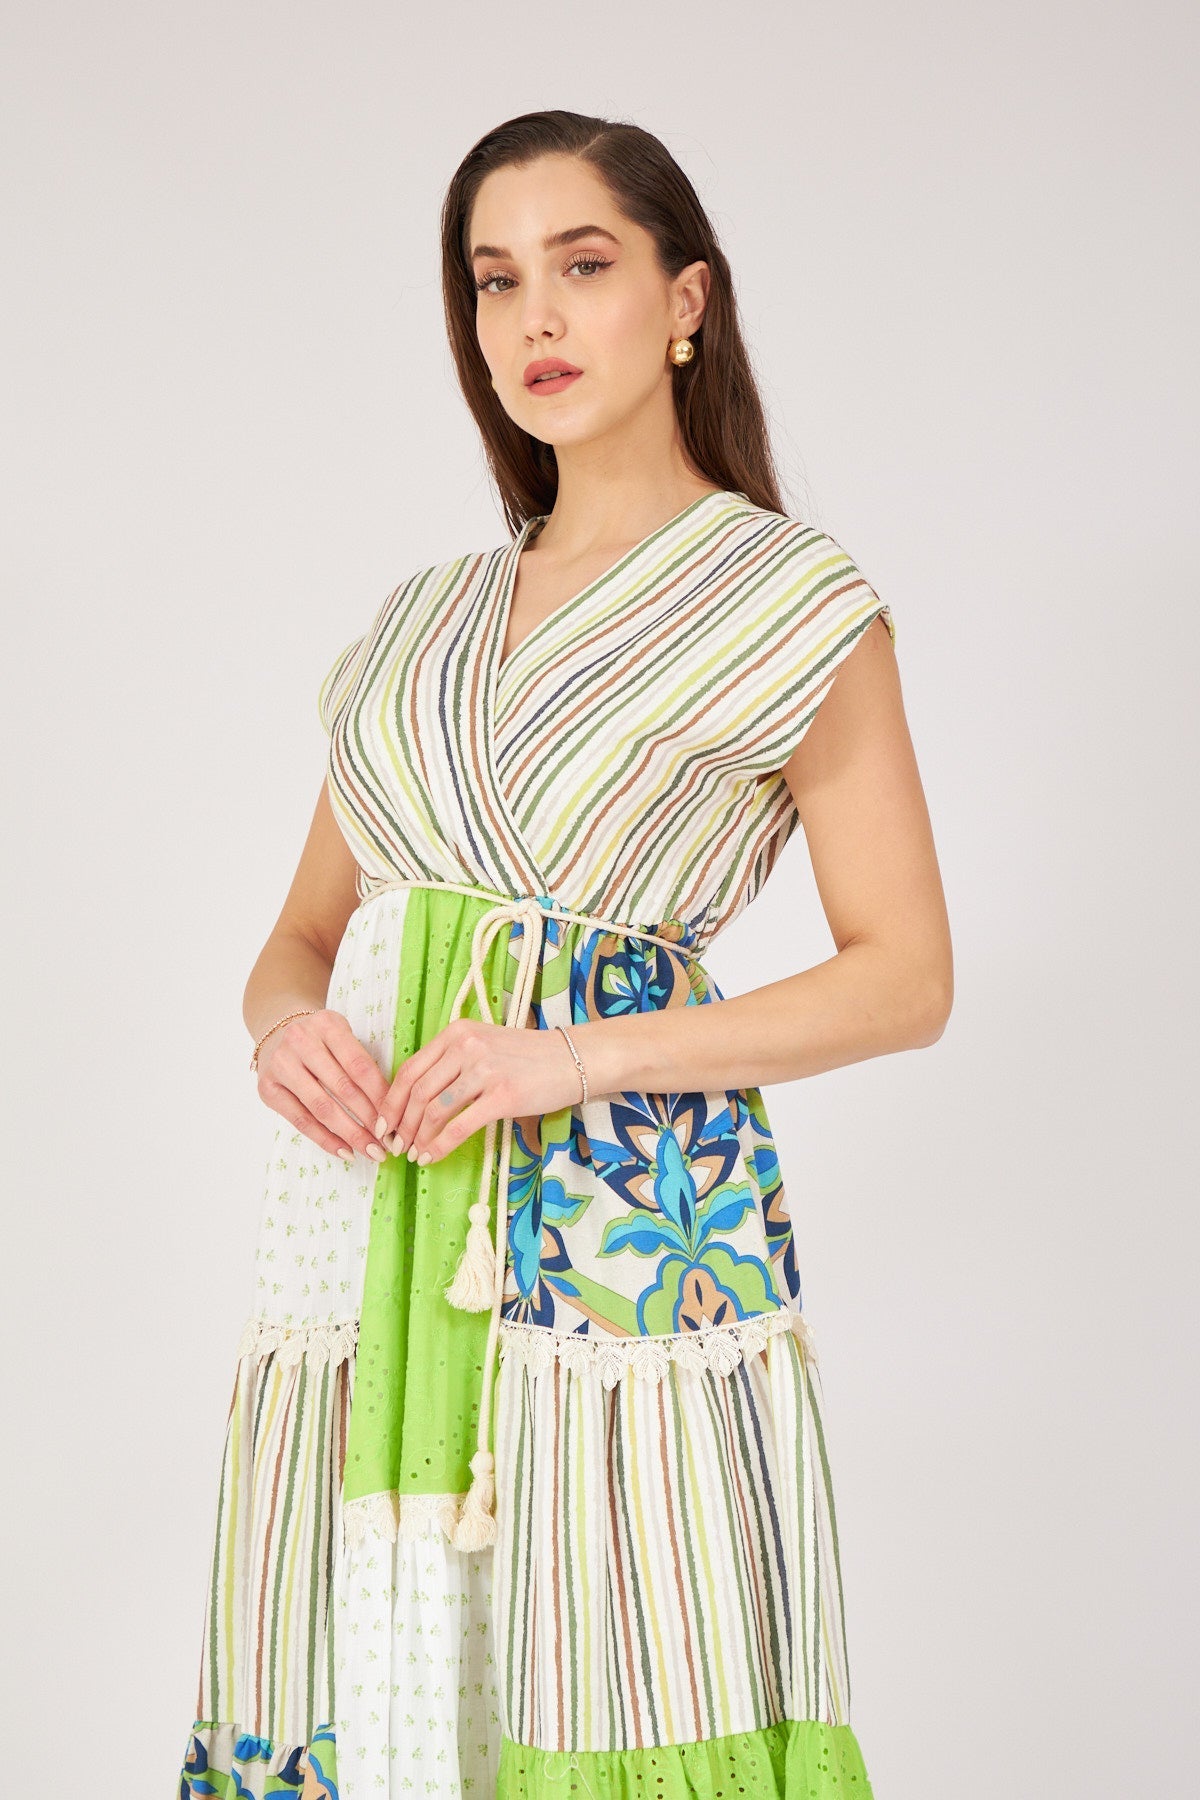 Green Patterned Cotton Dress - Lebbse